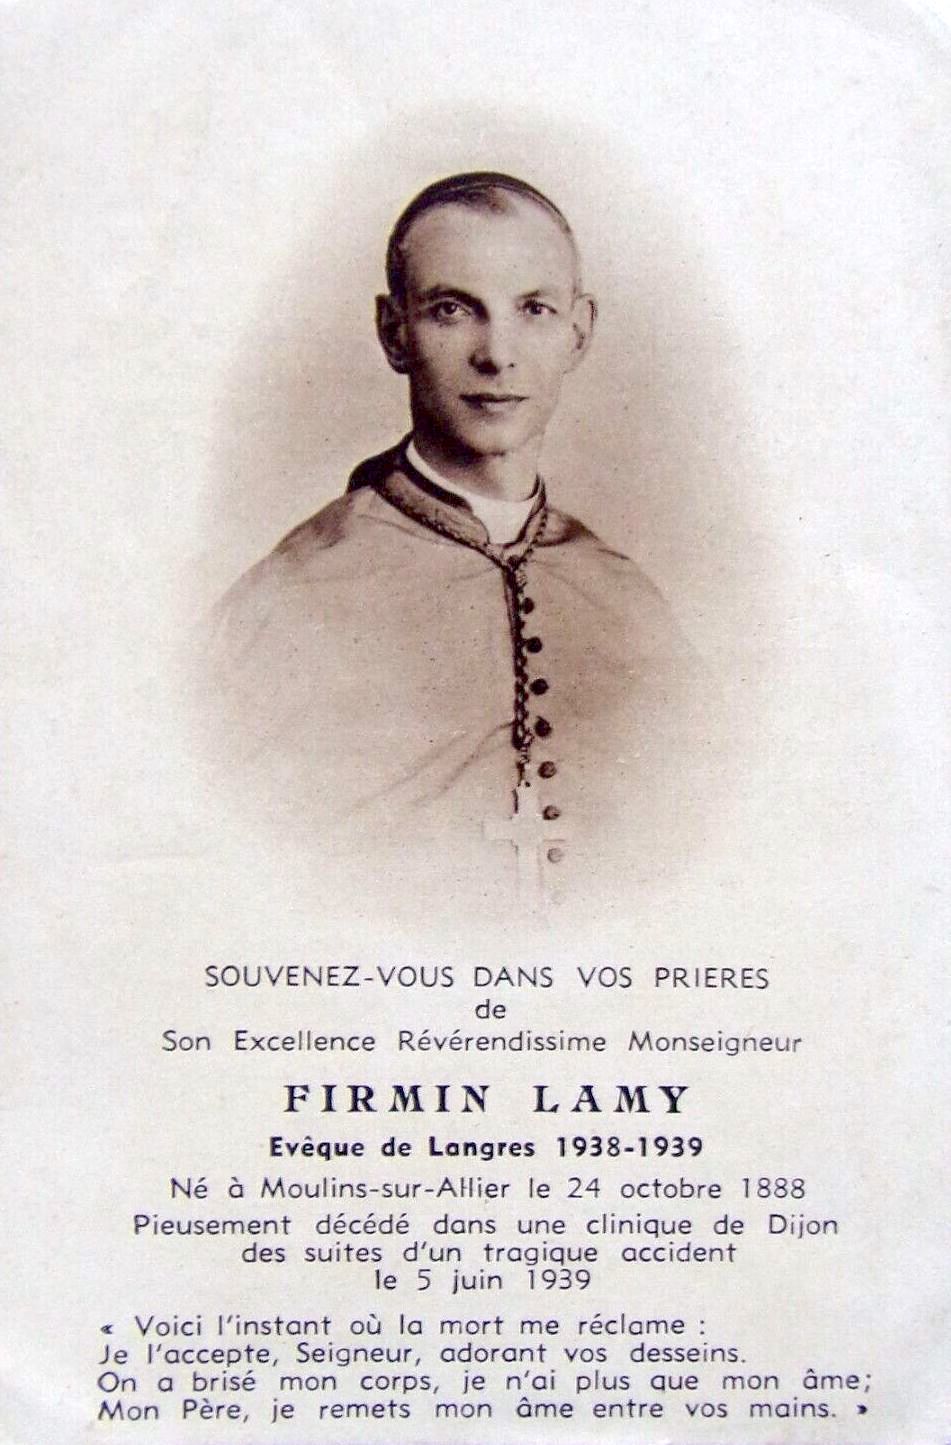 Firmin Lamy